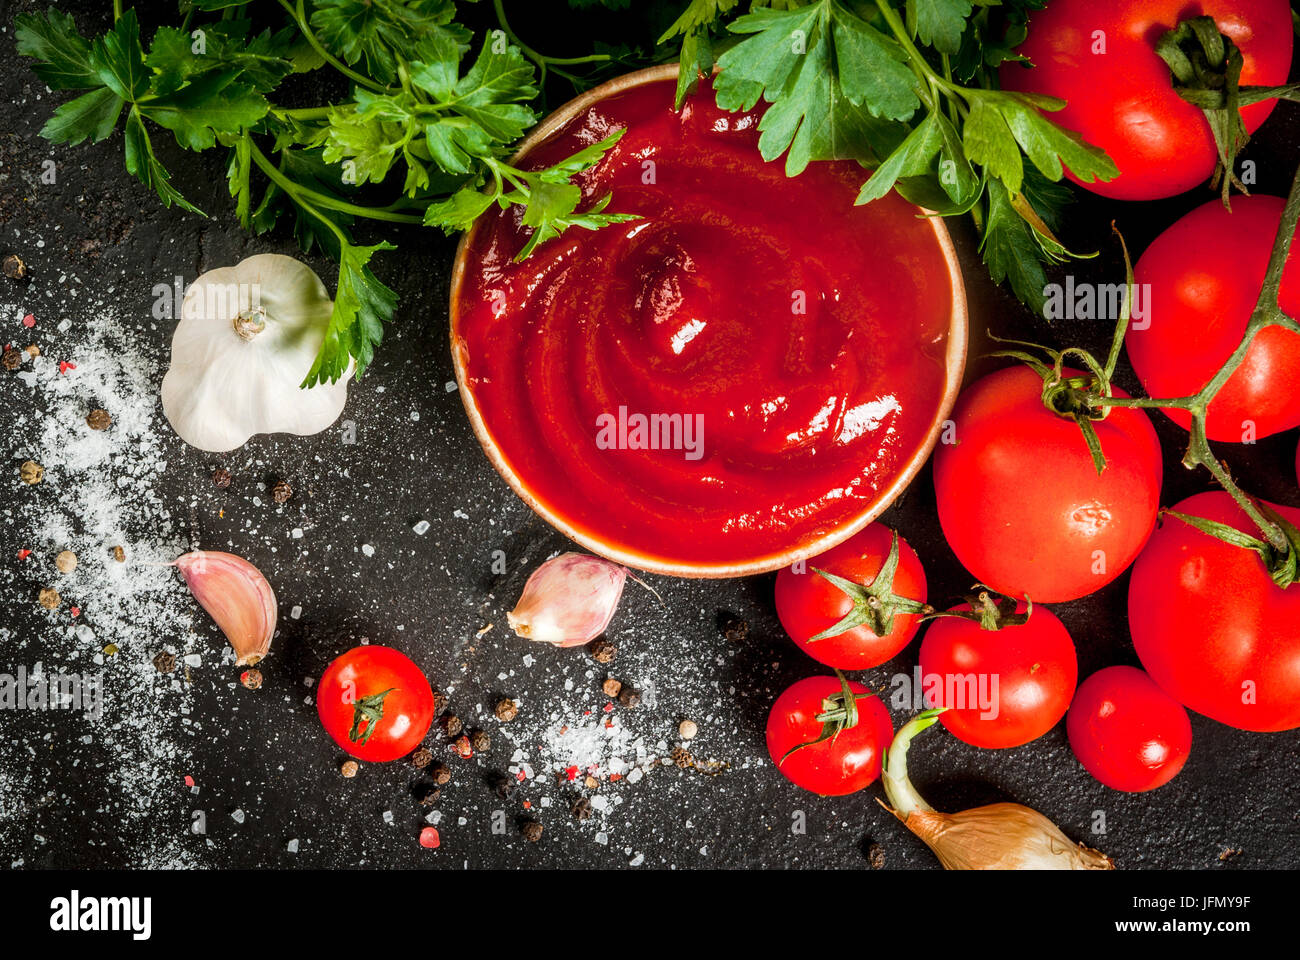 Freschi Fatti in casa organici di salsa di pomodoro o ketchup, in una piccola ciotola. Con gli ingredienti - prezzemolo, cipolle, aglio, pomodori, sale, pepe. Su un nero st Foto Stock